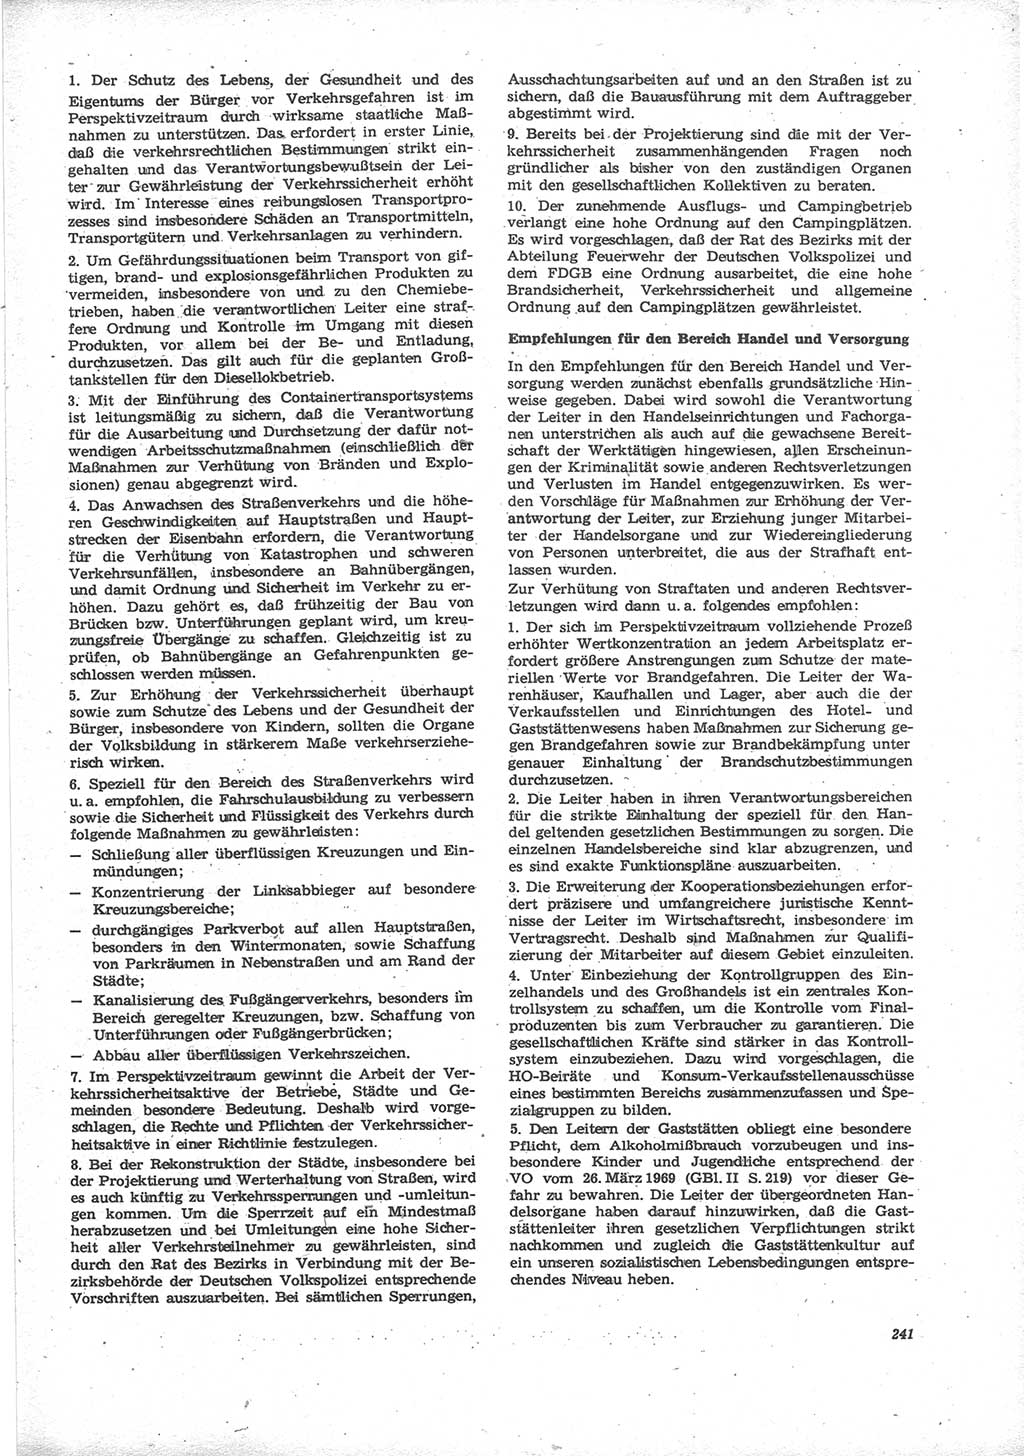 Neue Justiz (NJ), Zeitschrift für Recht und Rechtswissenschaft [Deutsche Demokratische Republik (DDR)], 24. Jahrgang 1970, Seite 241 (NJ DDR 1970, S. 241)